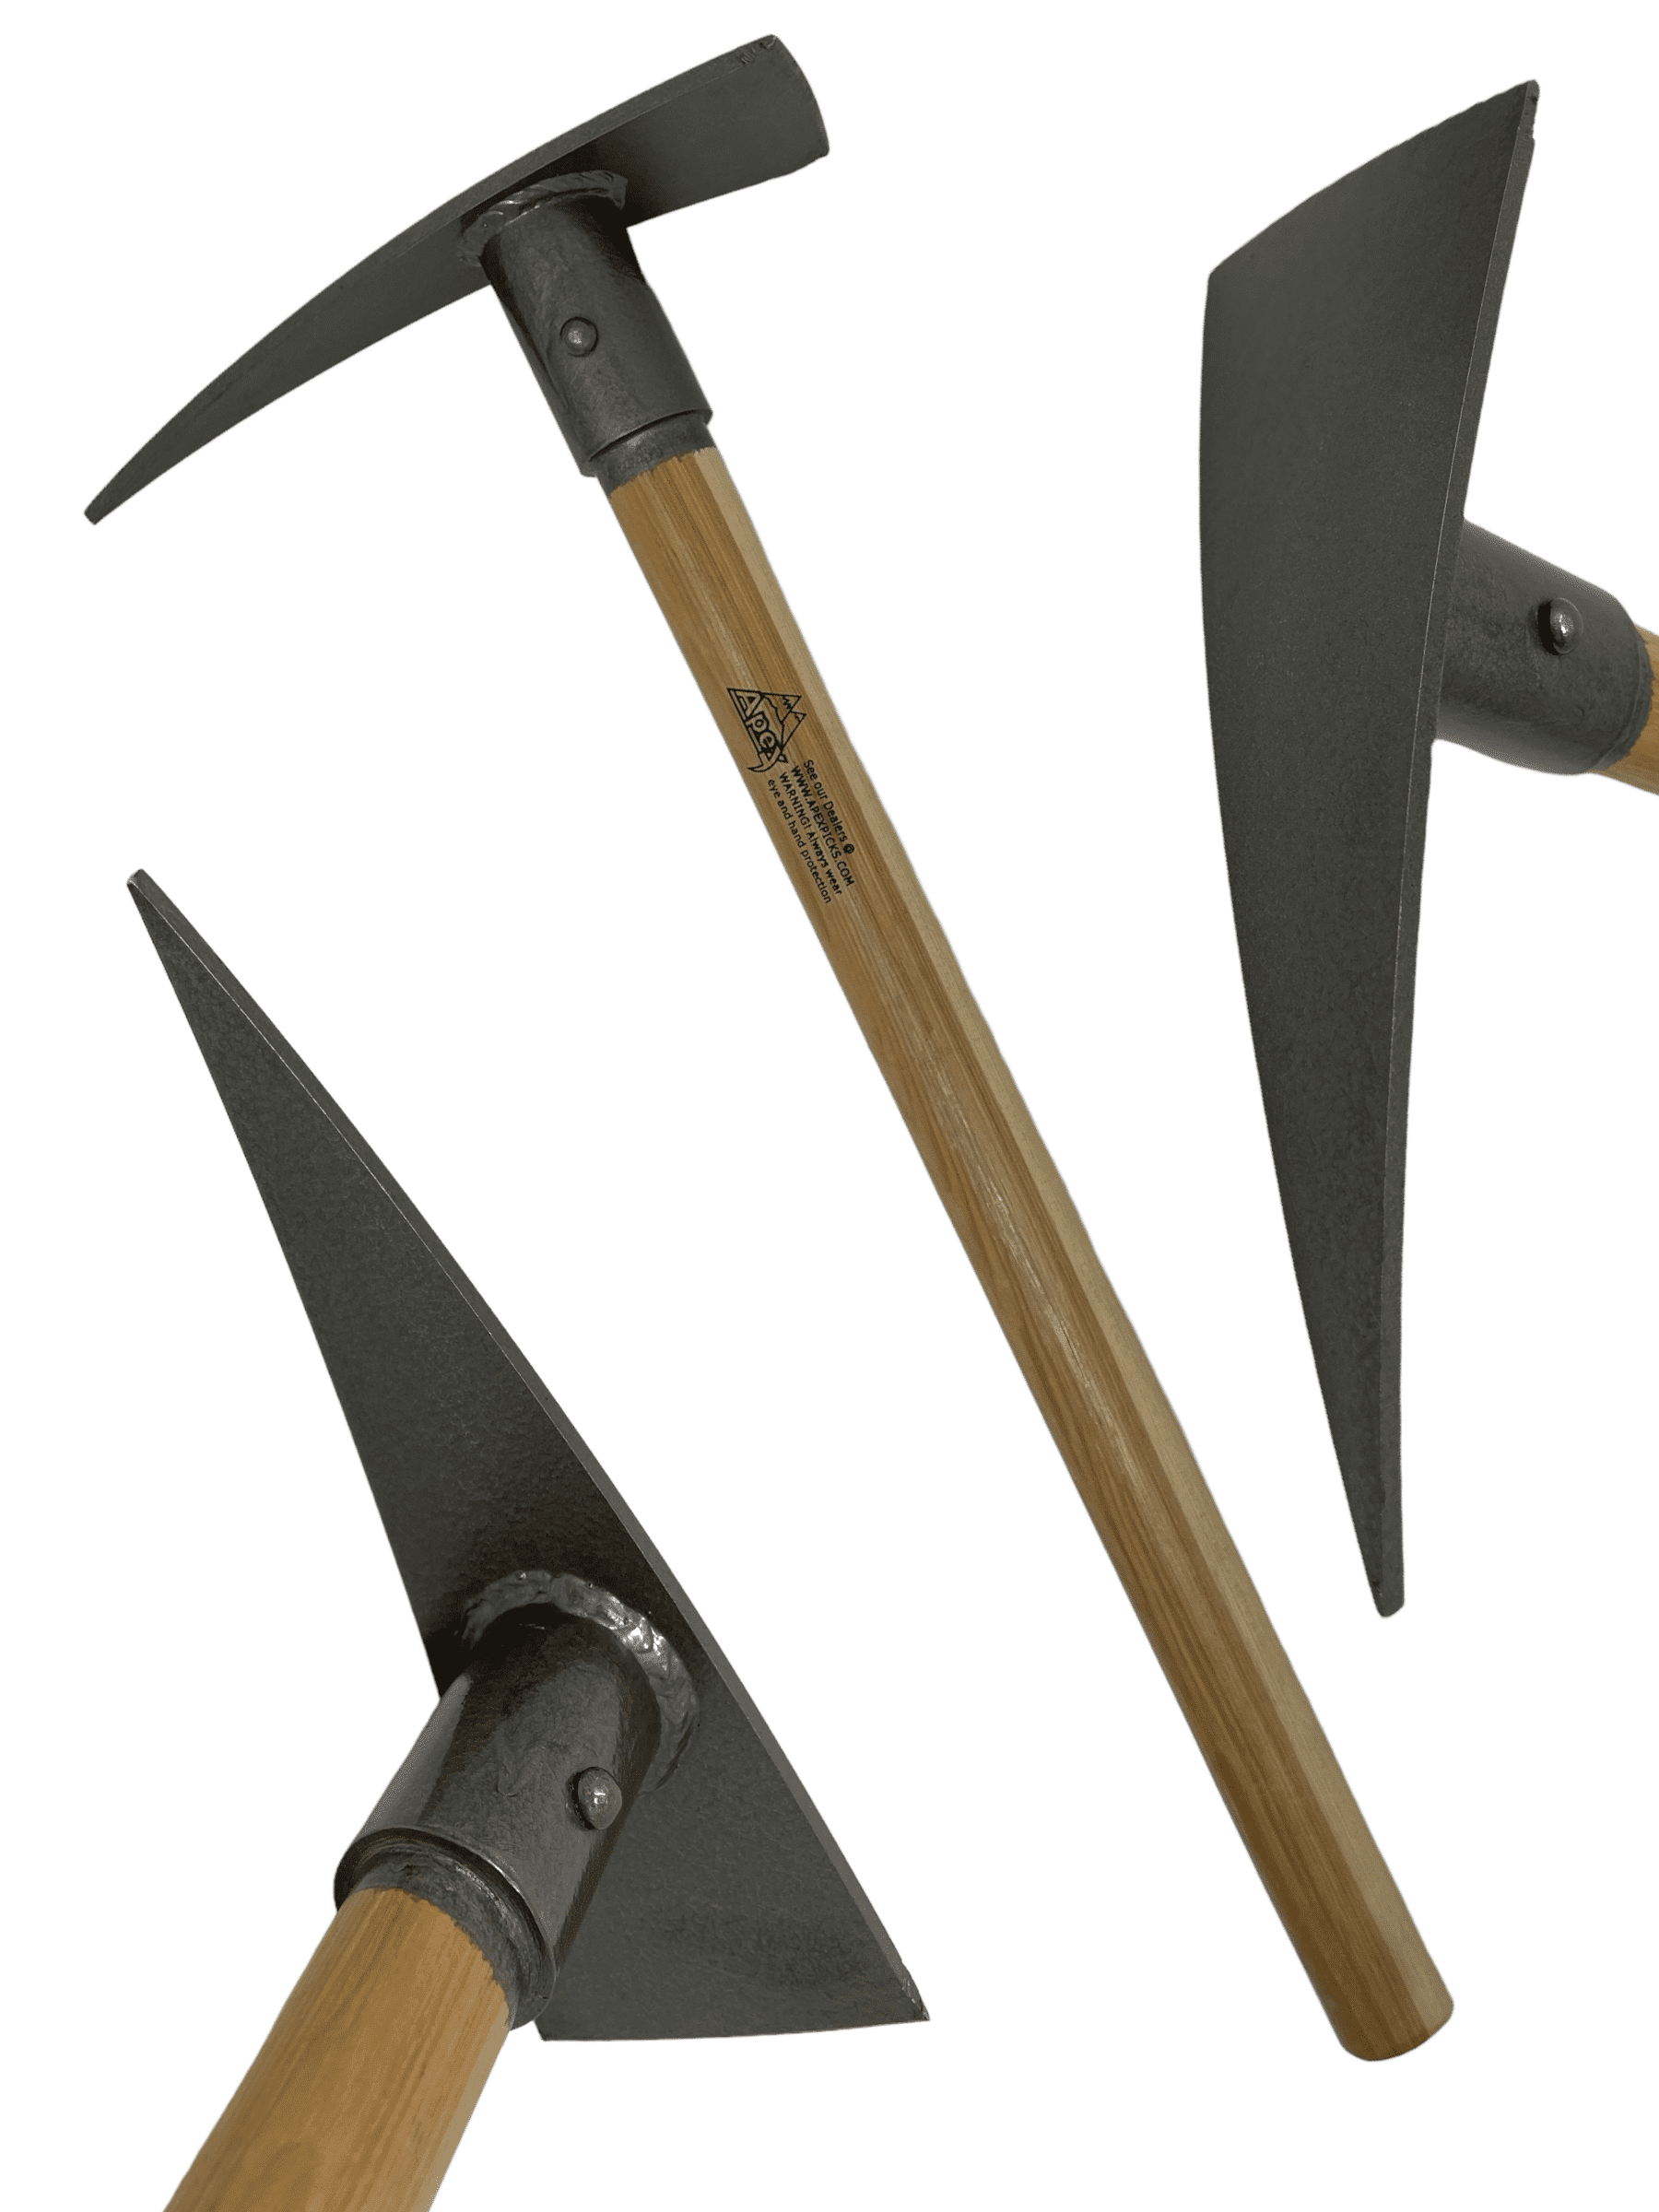 Rock Pick Hammer Kit - Equipment for Rock Hounding, Gold Mining &  Prospecting